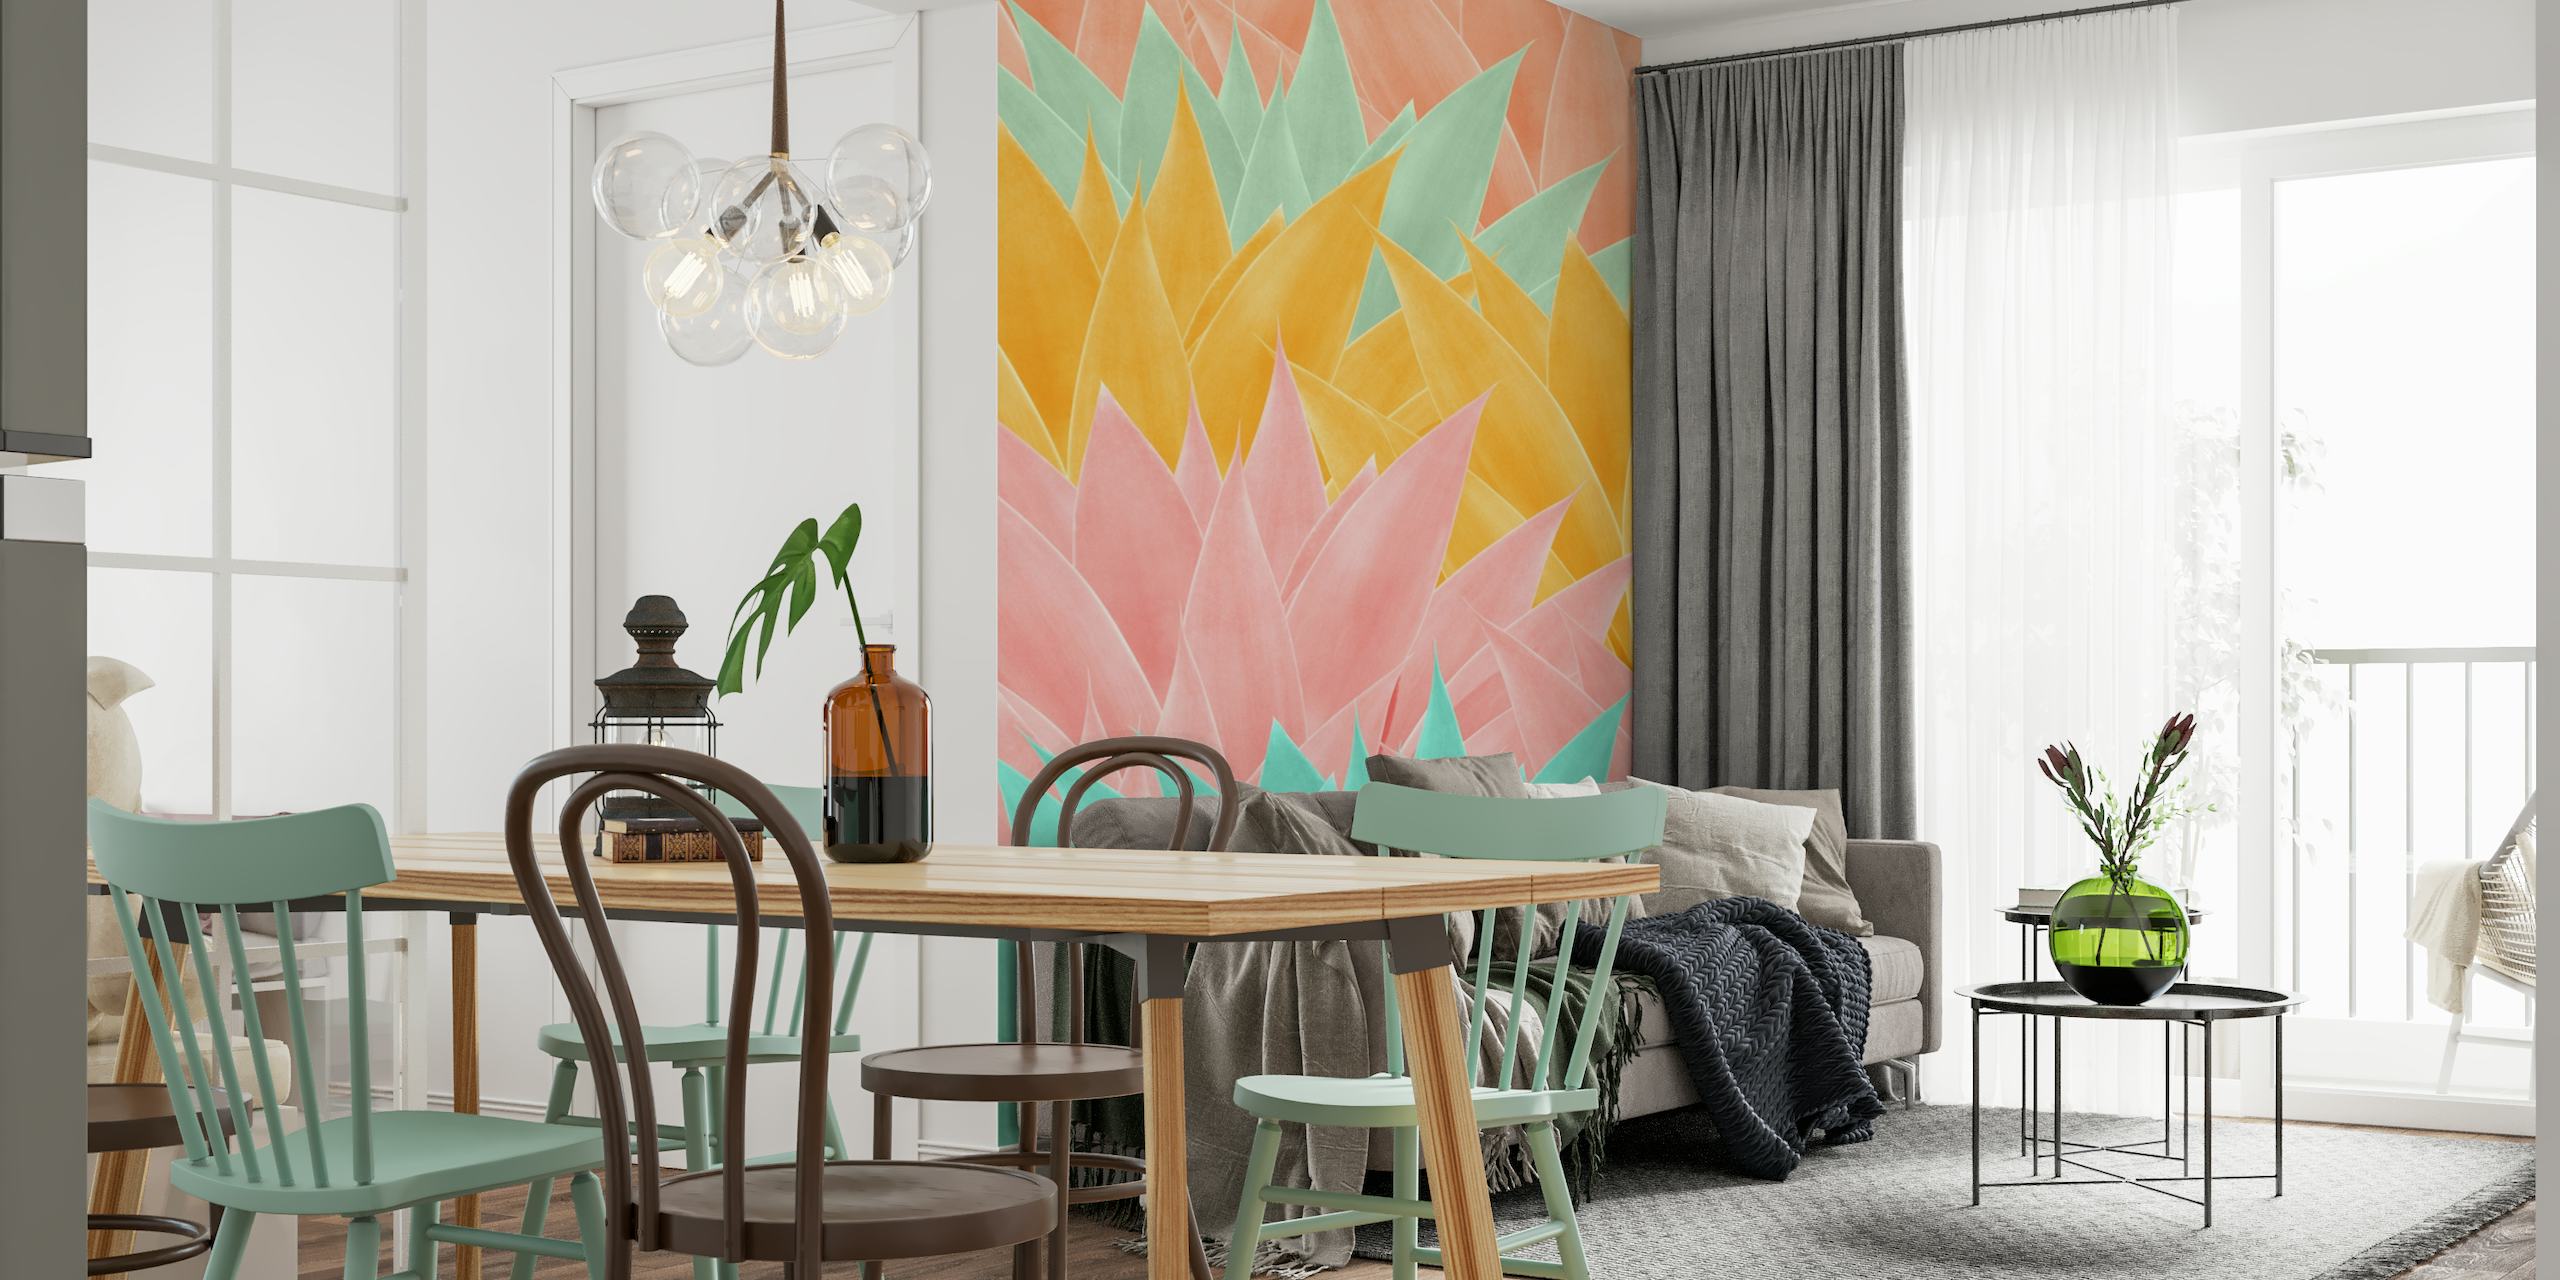 Colorido mural de pared con estampado de hojas de agave en tonos rosa, amarillo y aguamarina para un diseño interior contemporáneo.